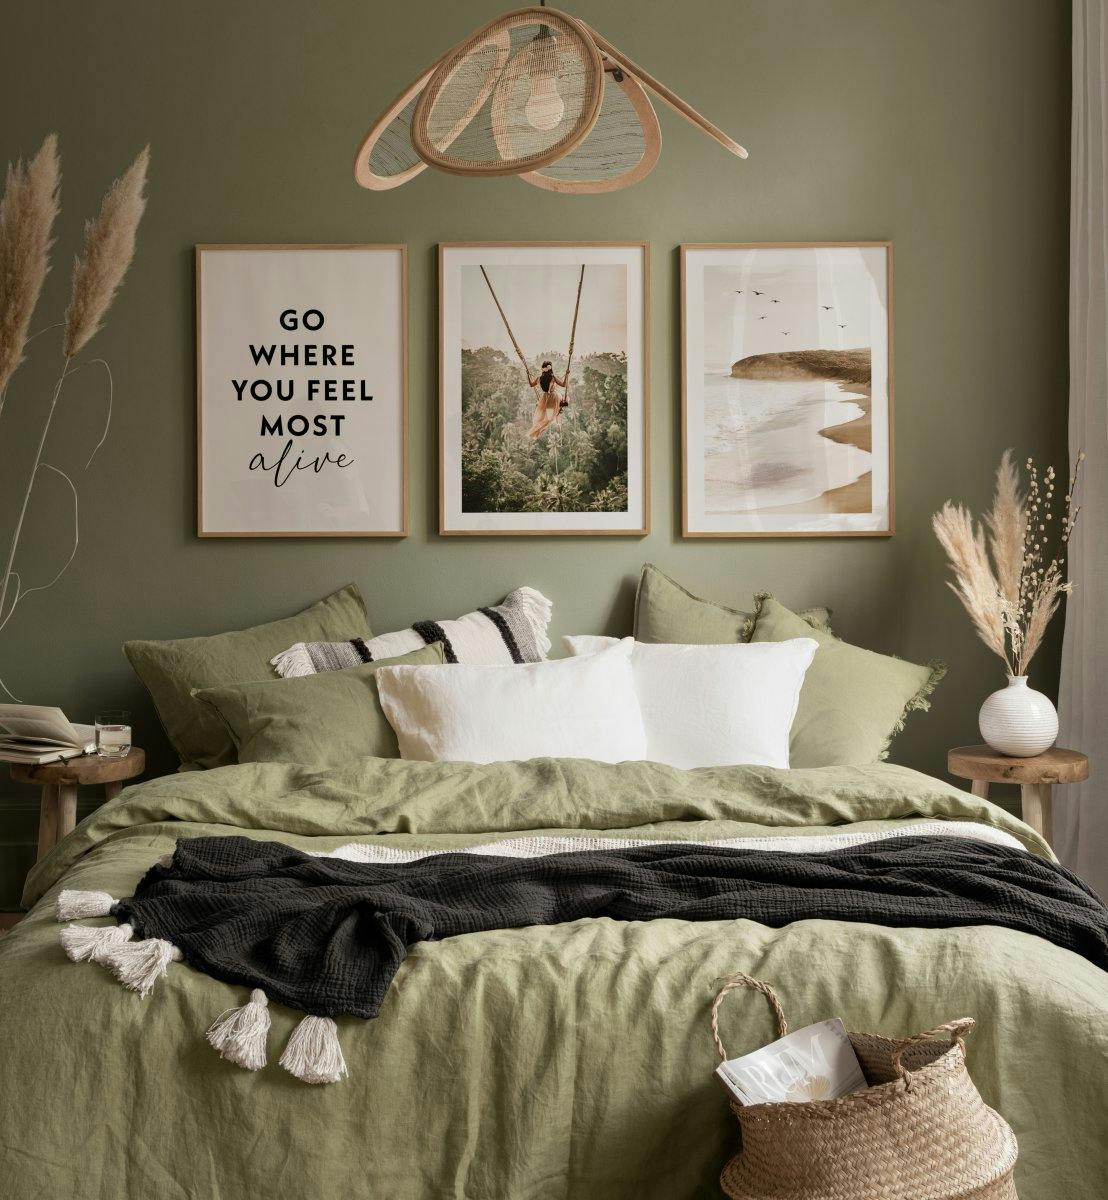 Natuurfoto's en quotes in serene kleuren voor de slaapkamer